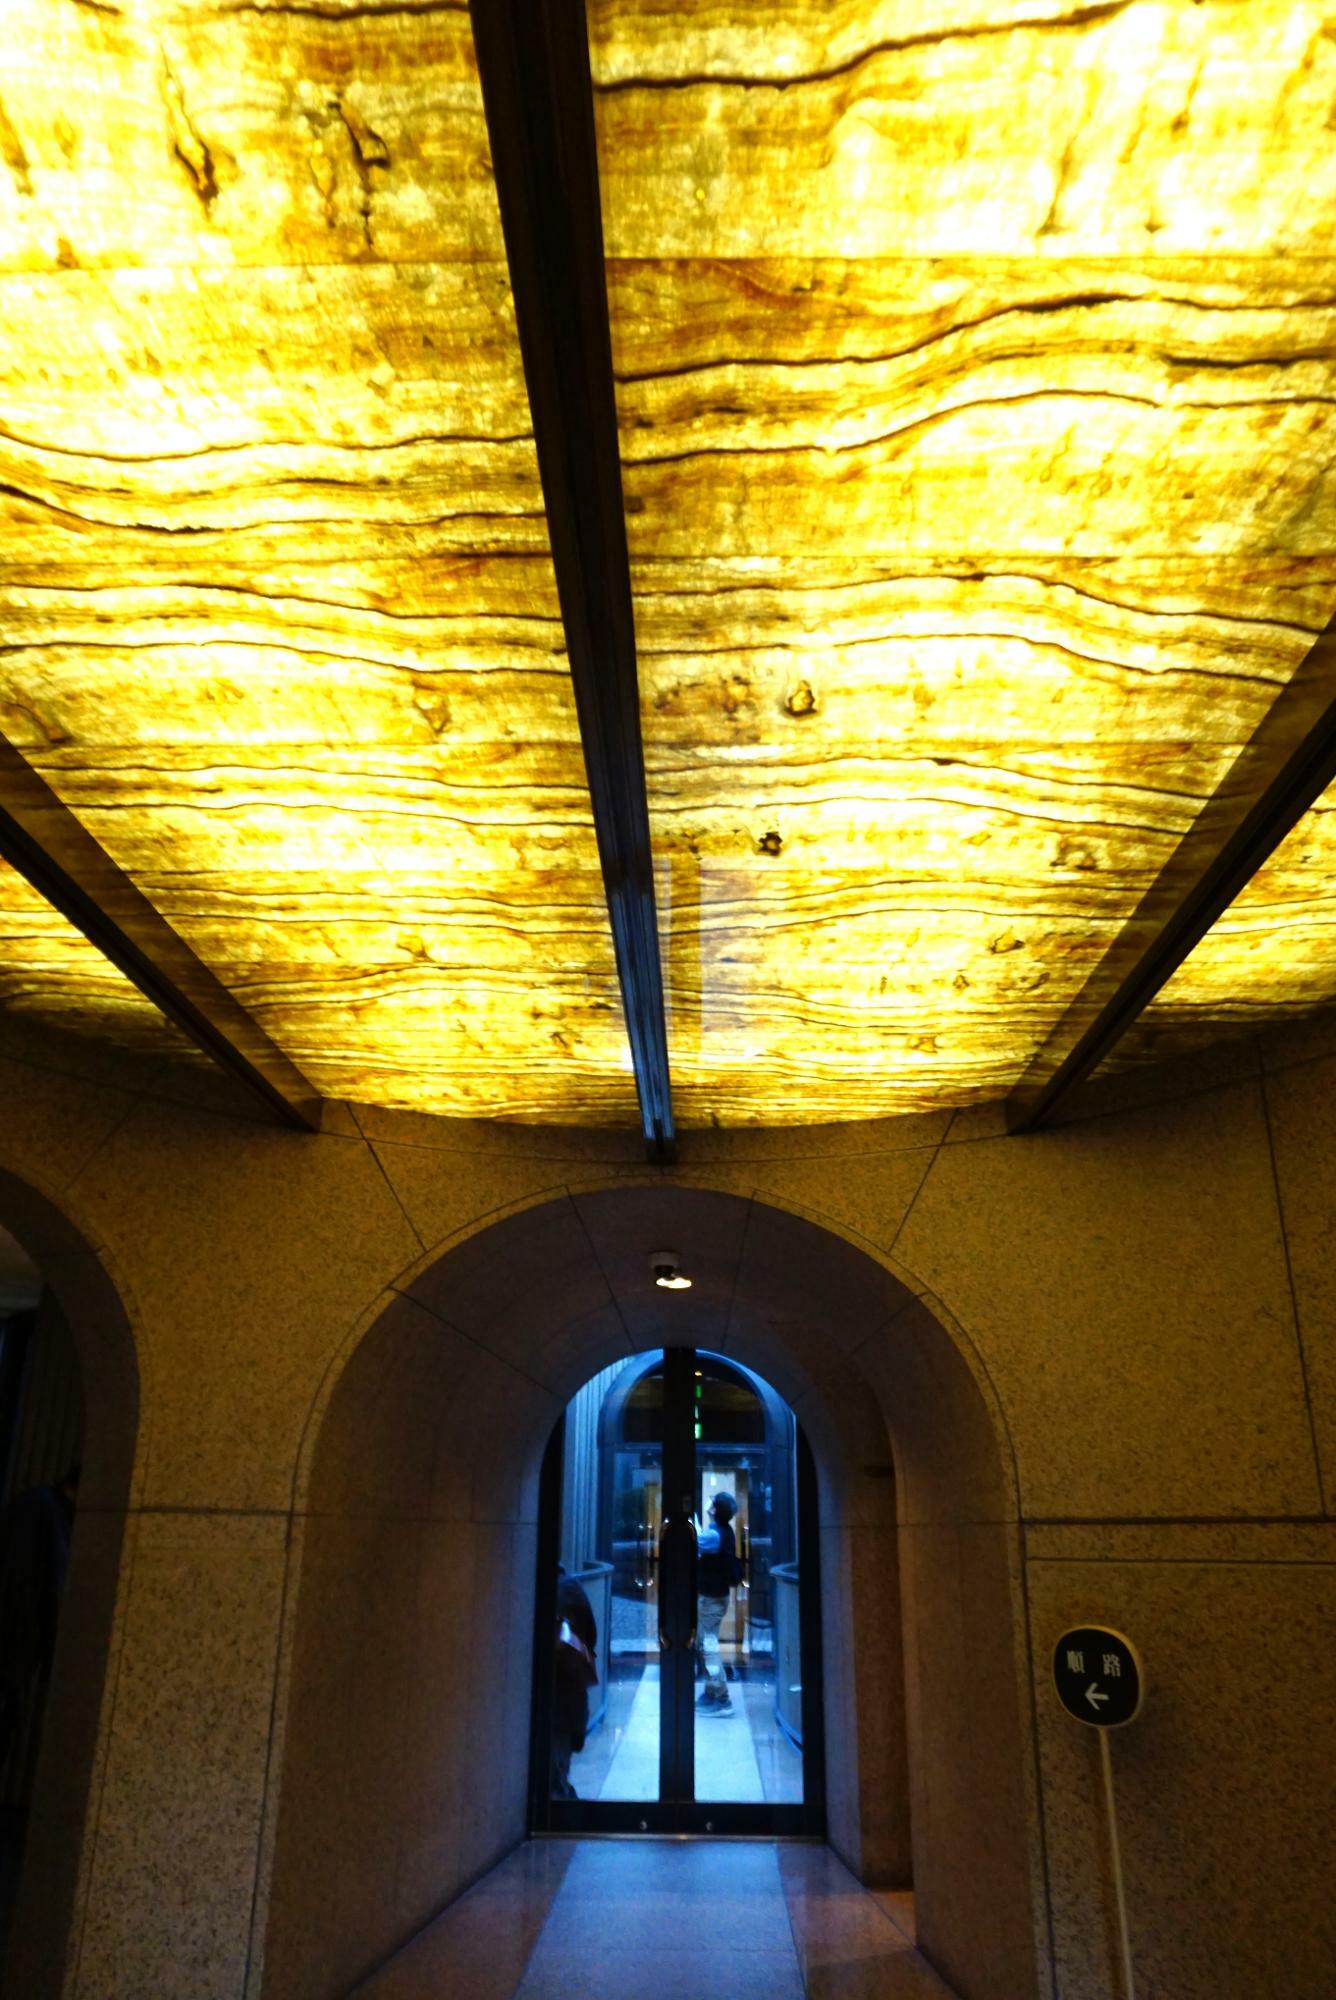 エントランスに入ったら、まず天井にご注目を。薄いオニキスの石材を透過する照明の摩訶不思議な光模様が既にアート。白井晟一の美意識を館内の随所で発見できるのも、松涛美術館の醍醐味